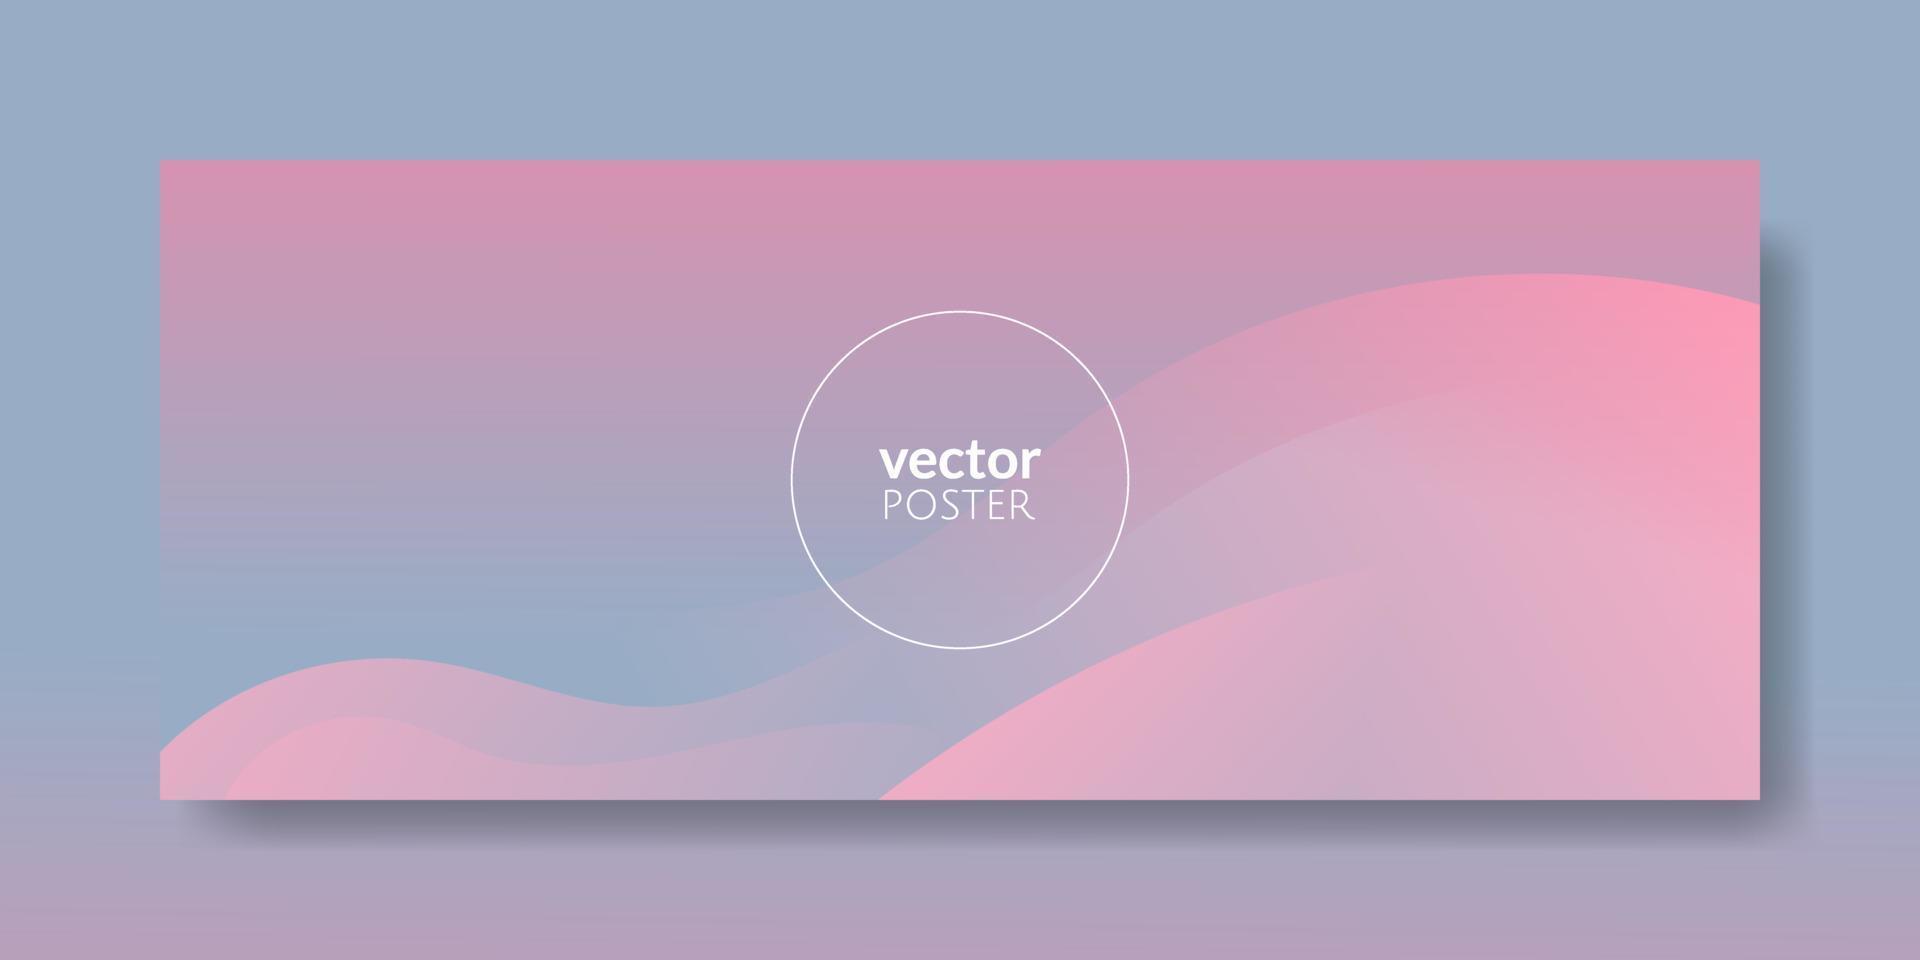 abstrakt rosa vätskevåg bakgrund vektor